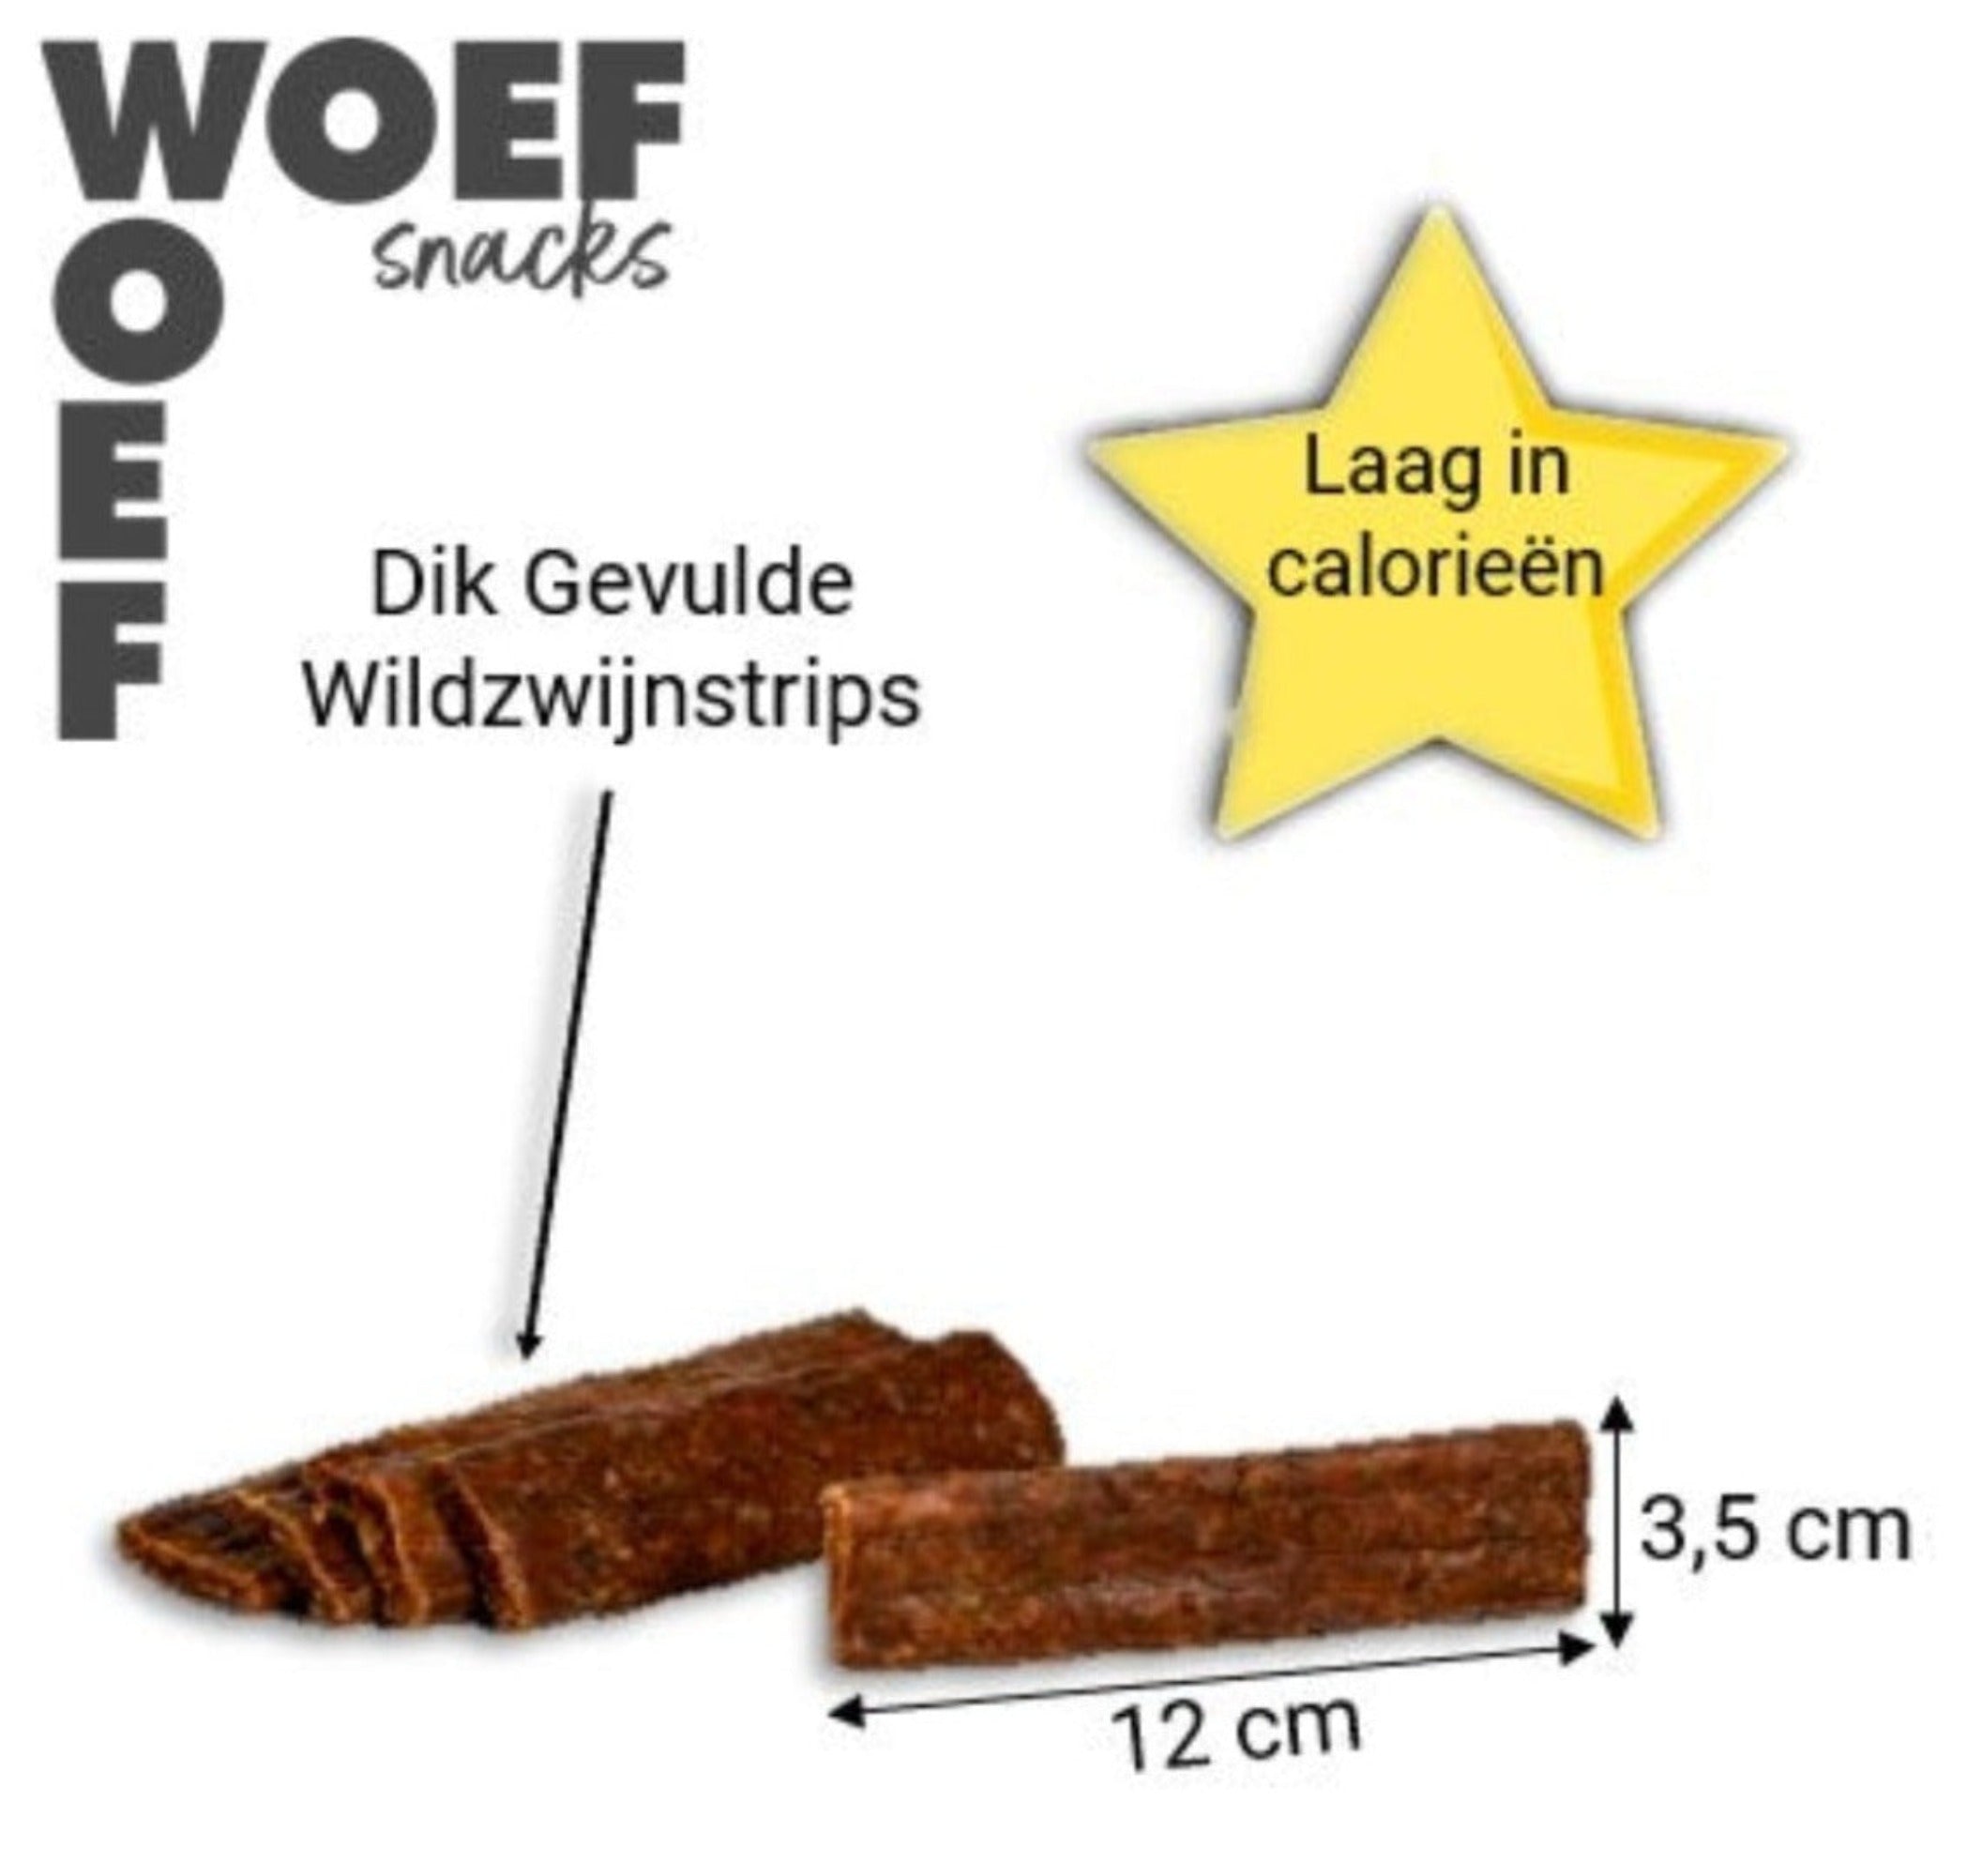 De wildzwijnstrips zijn dik gevuld. Ze zijn laat in calorieen. De lengte is 12 centimeter en de snacks is 3,5 centimeter breed.